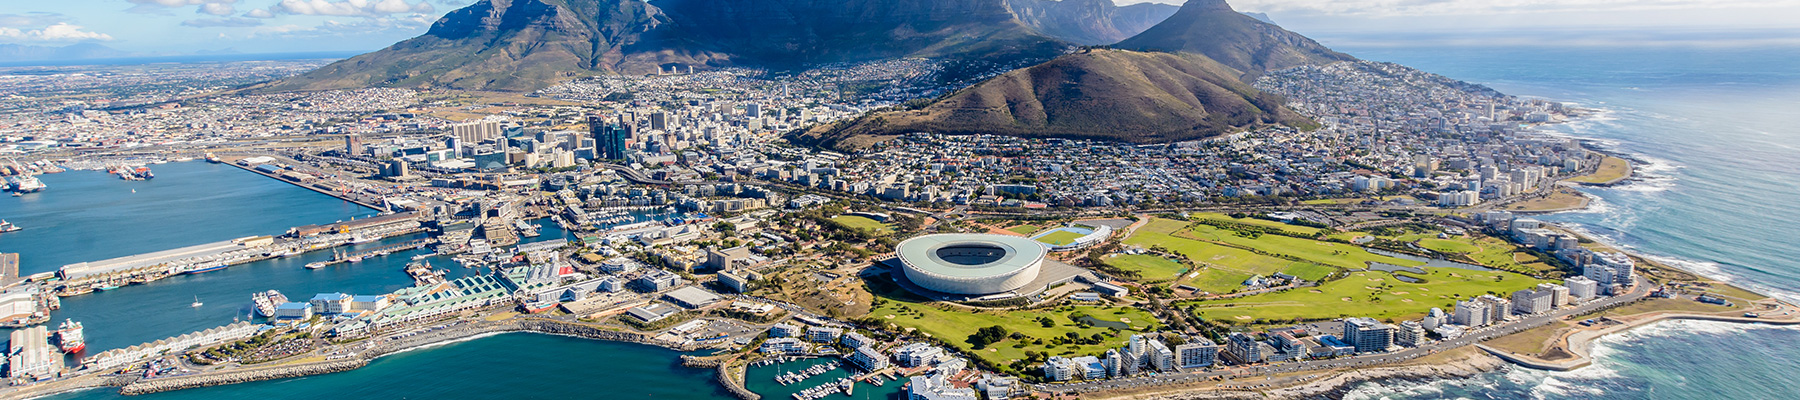 sites de rencontre de Cape Town datant Girard Perregaux Watch